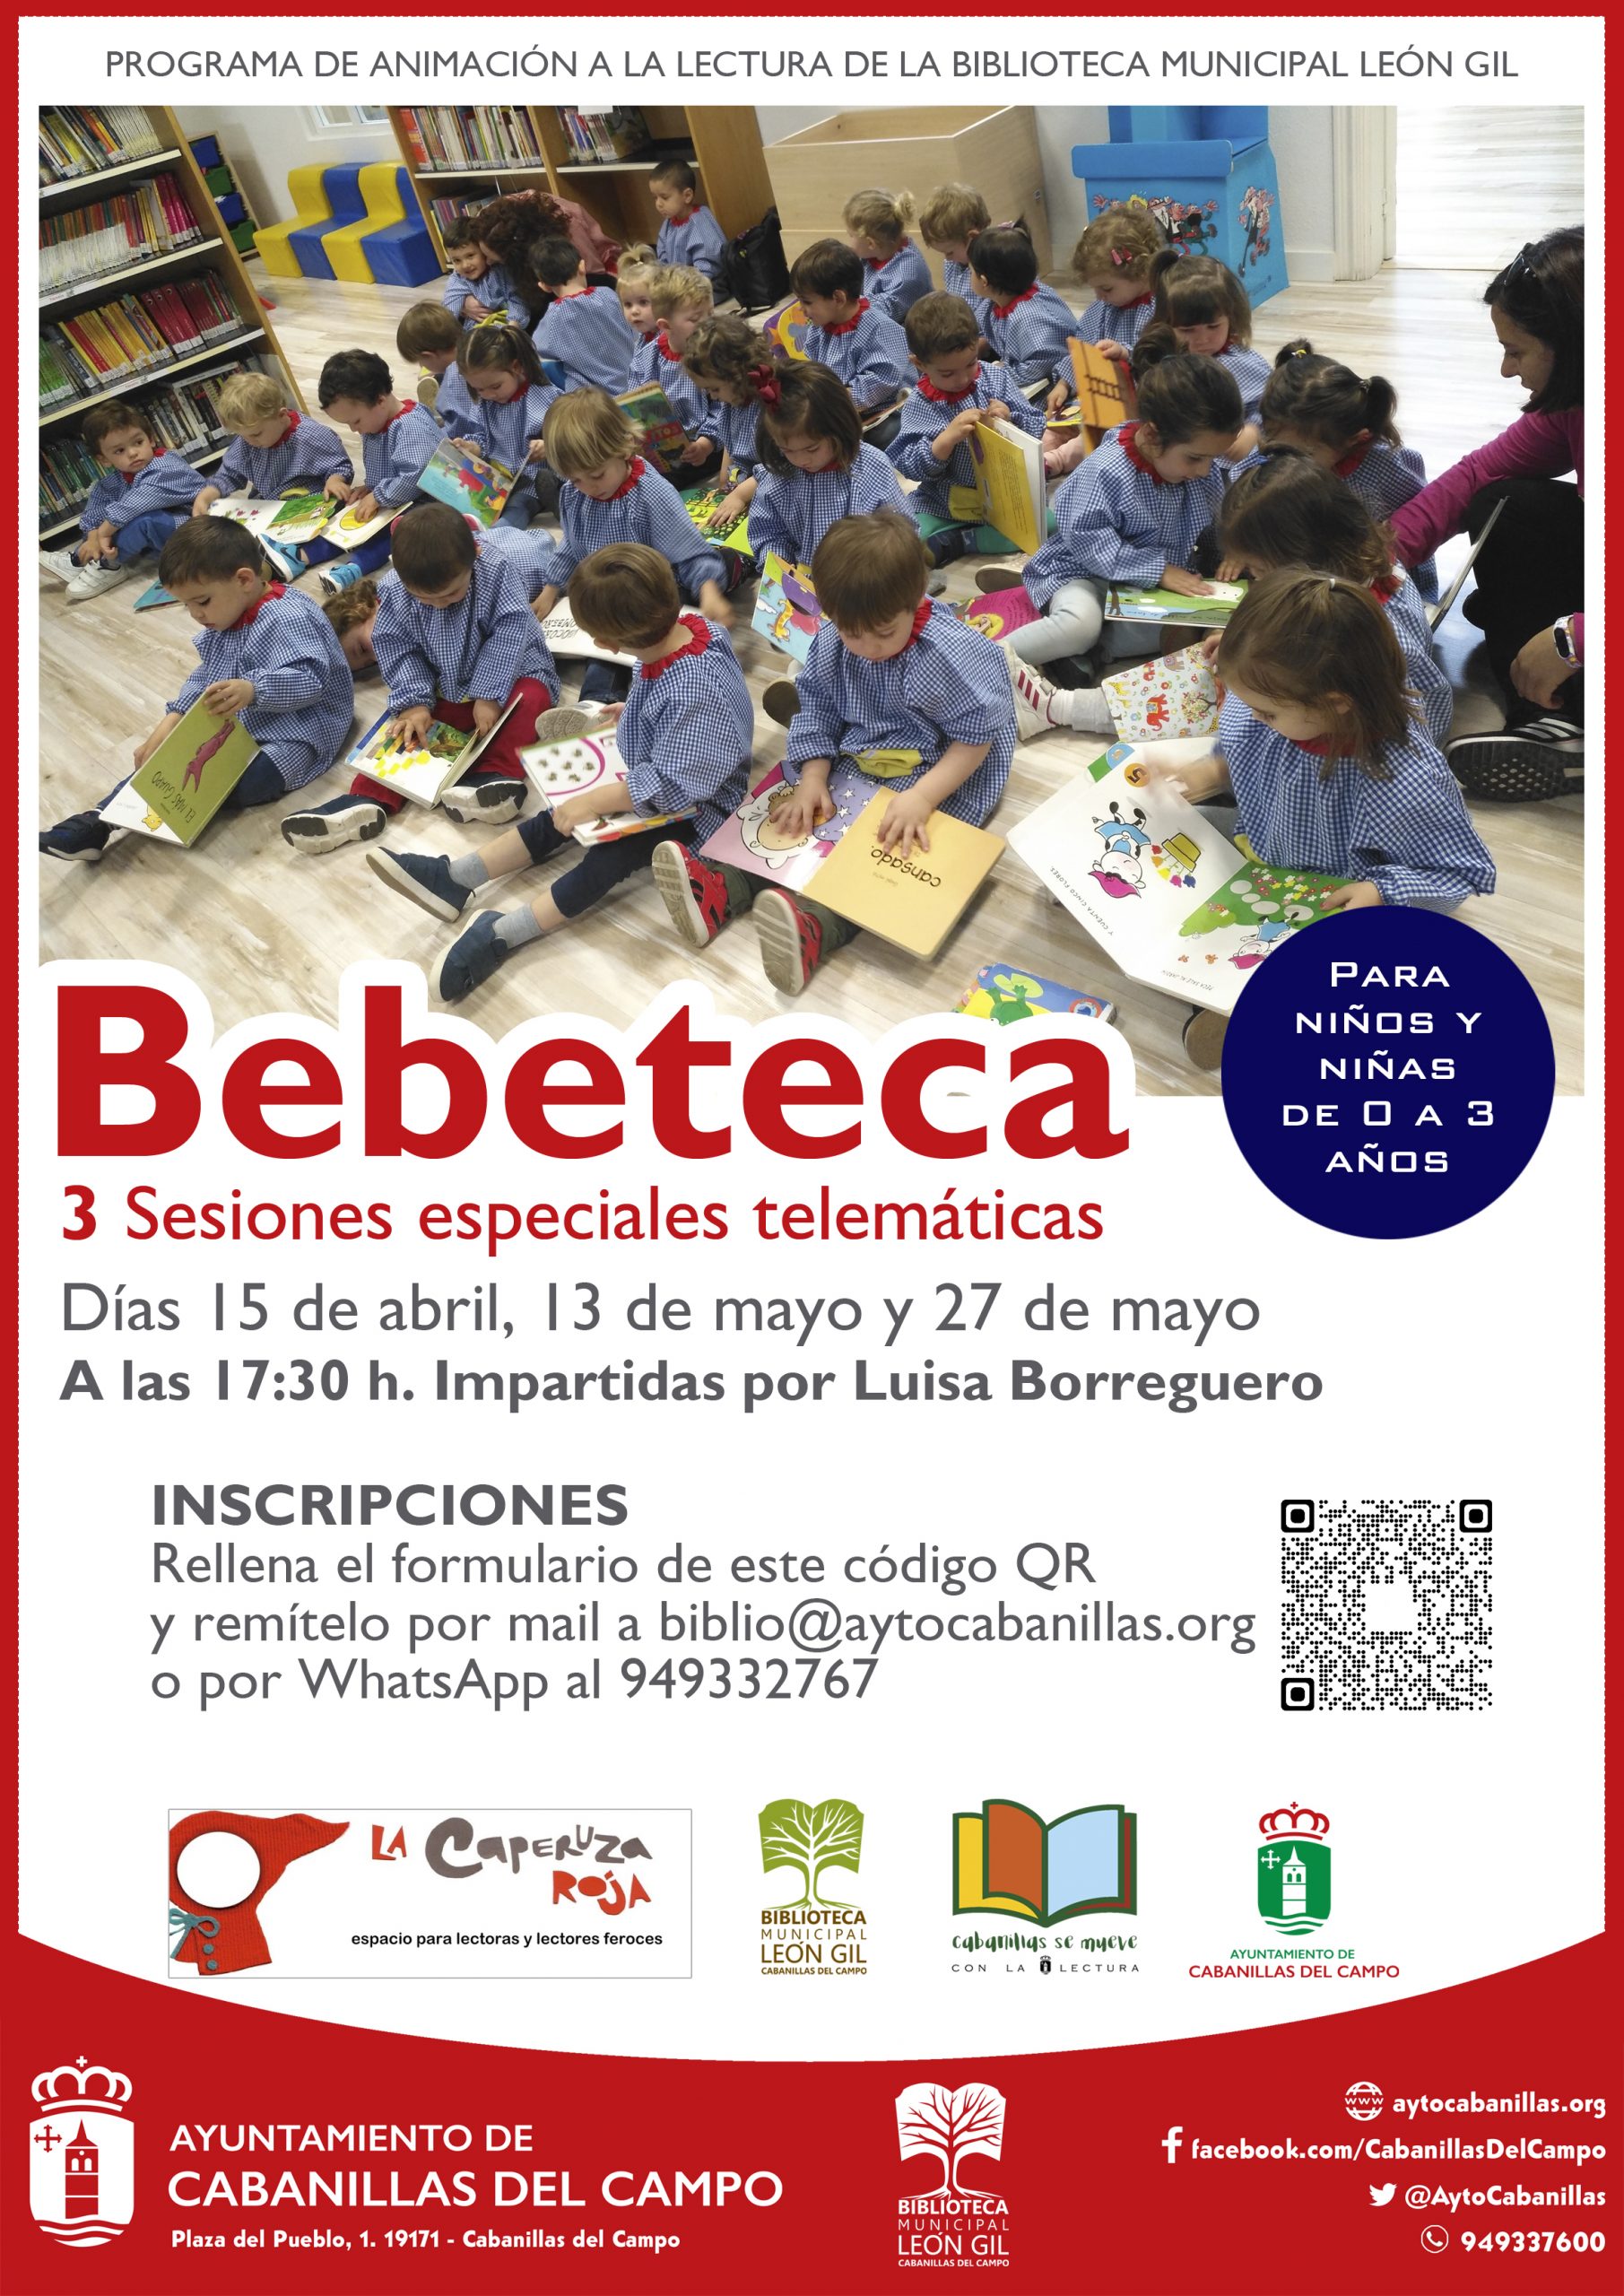 La Biblioteca León Gil Programa Tres Sesiones Especiales De La Bebeteca Para Los Días 15 De